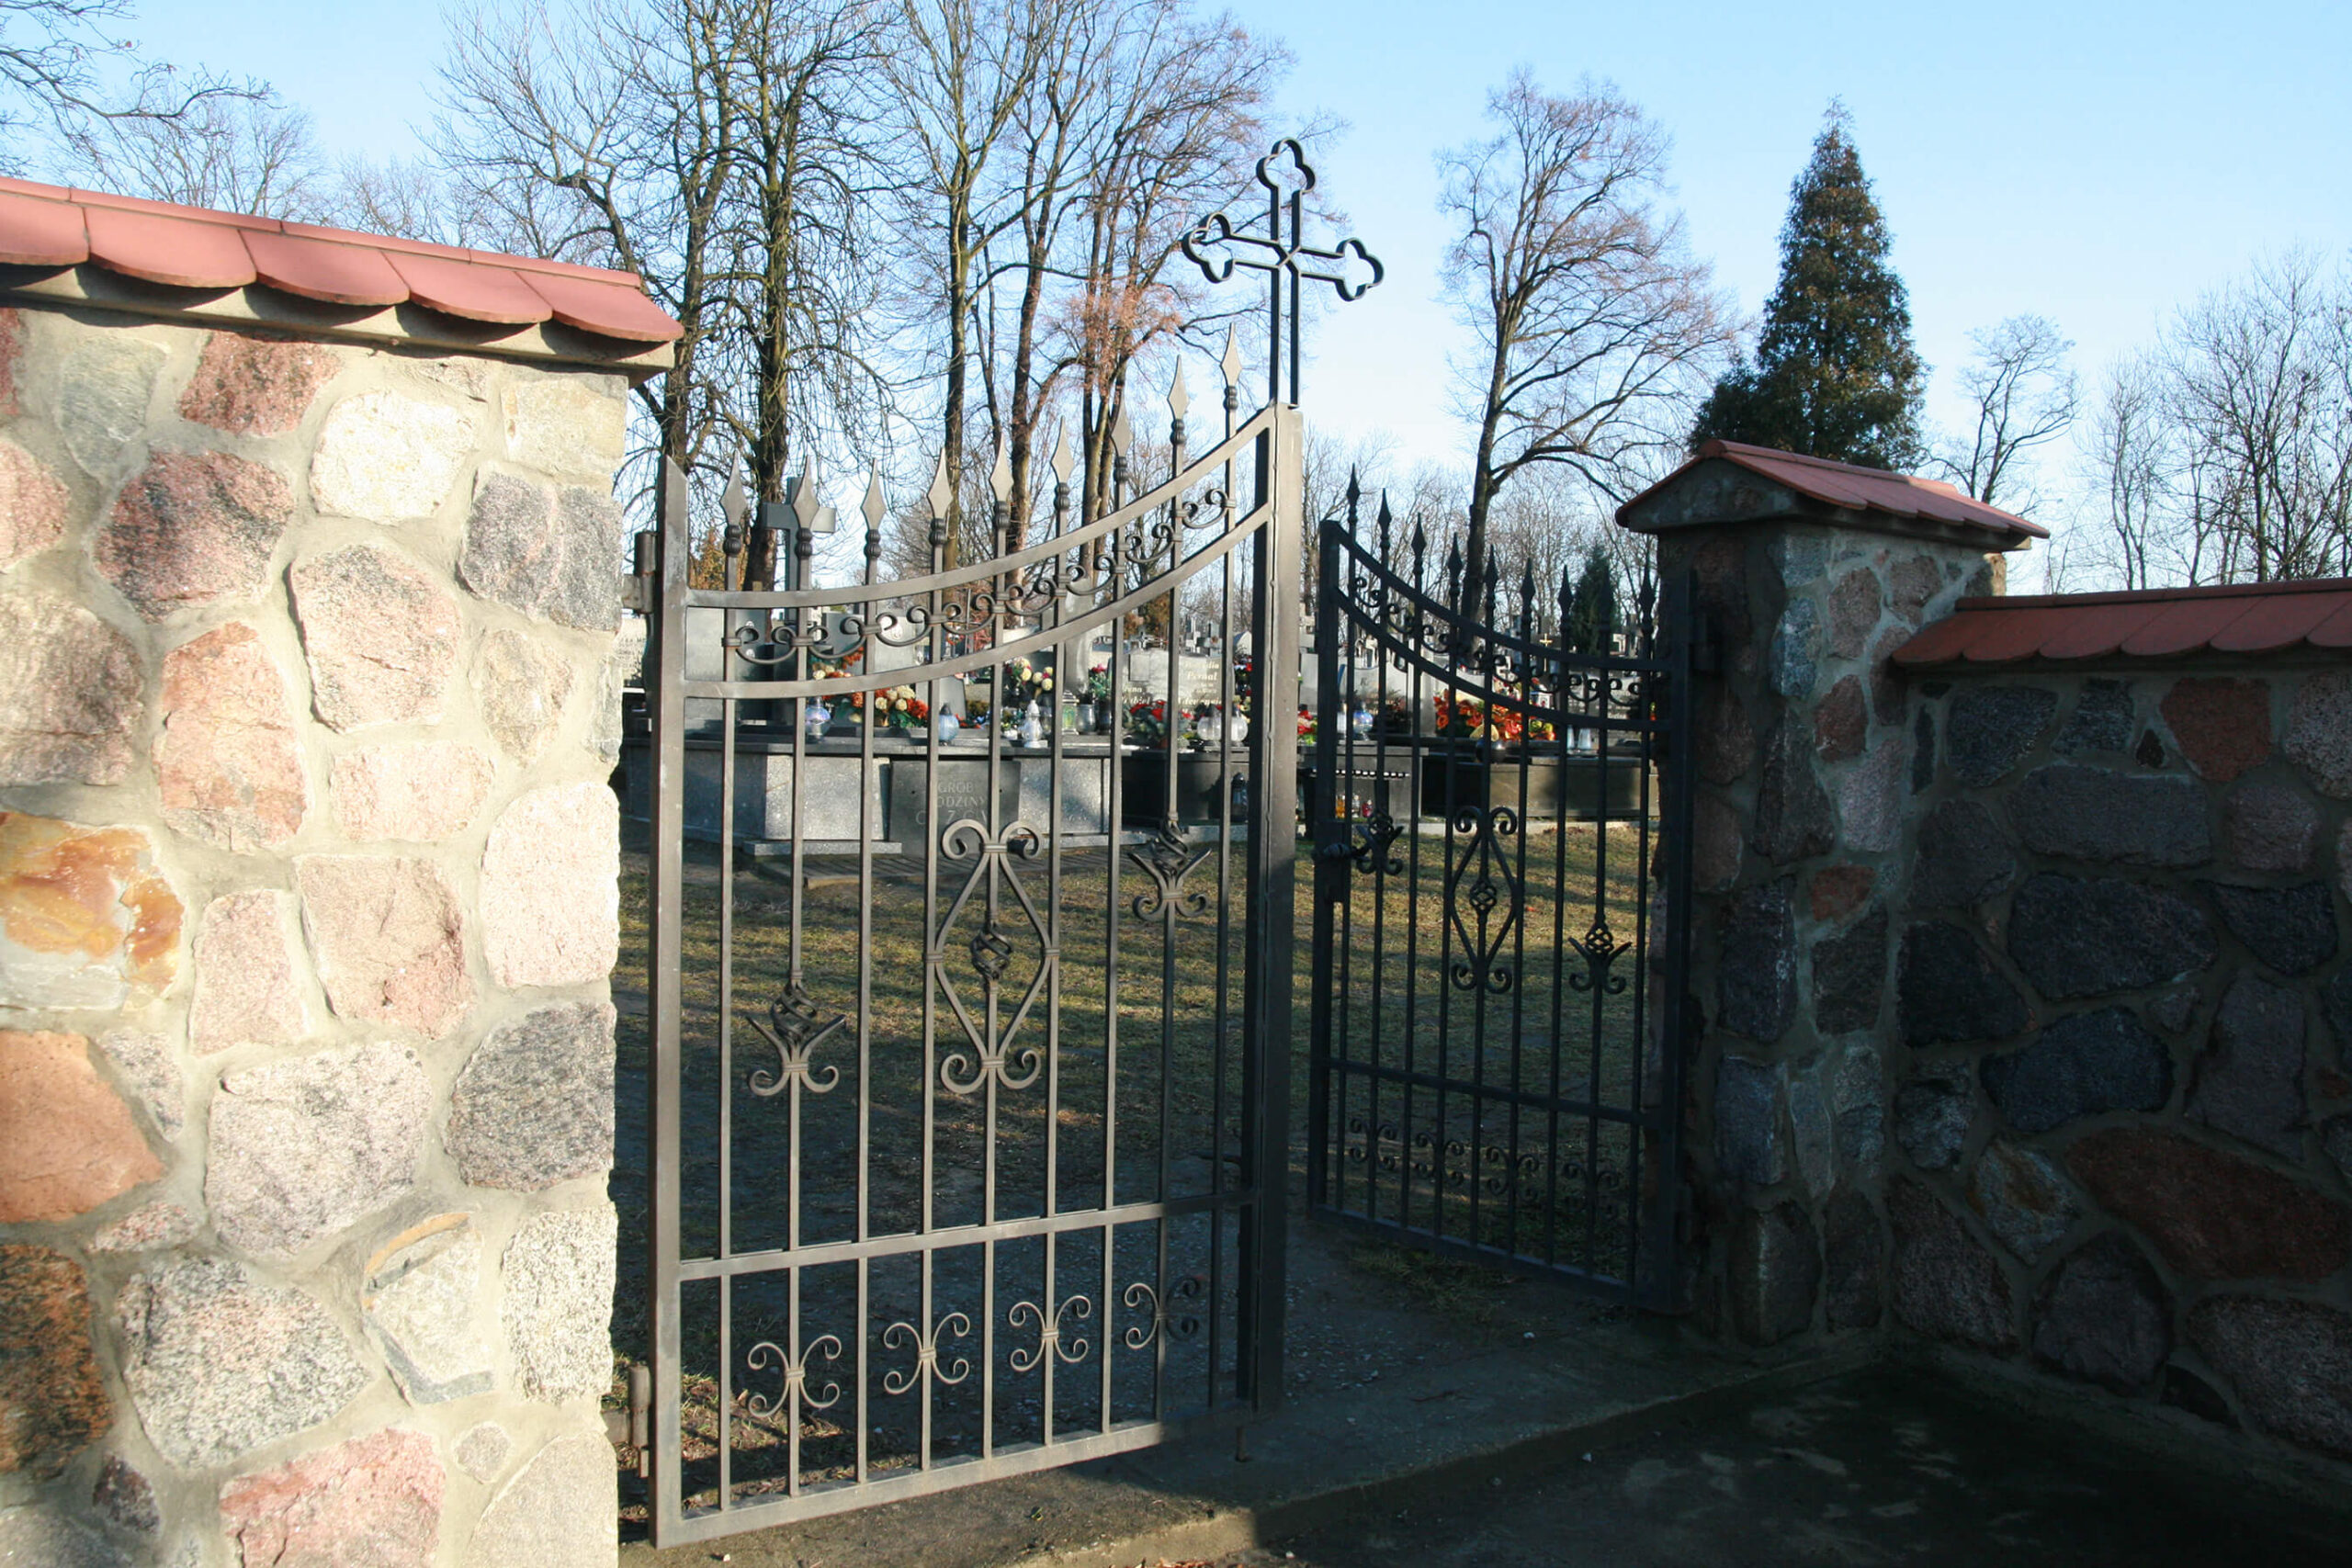 Cemetery in Konary